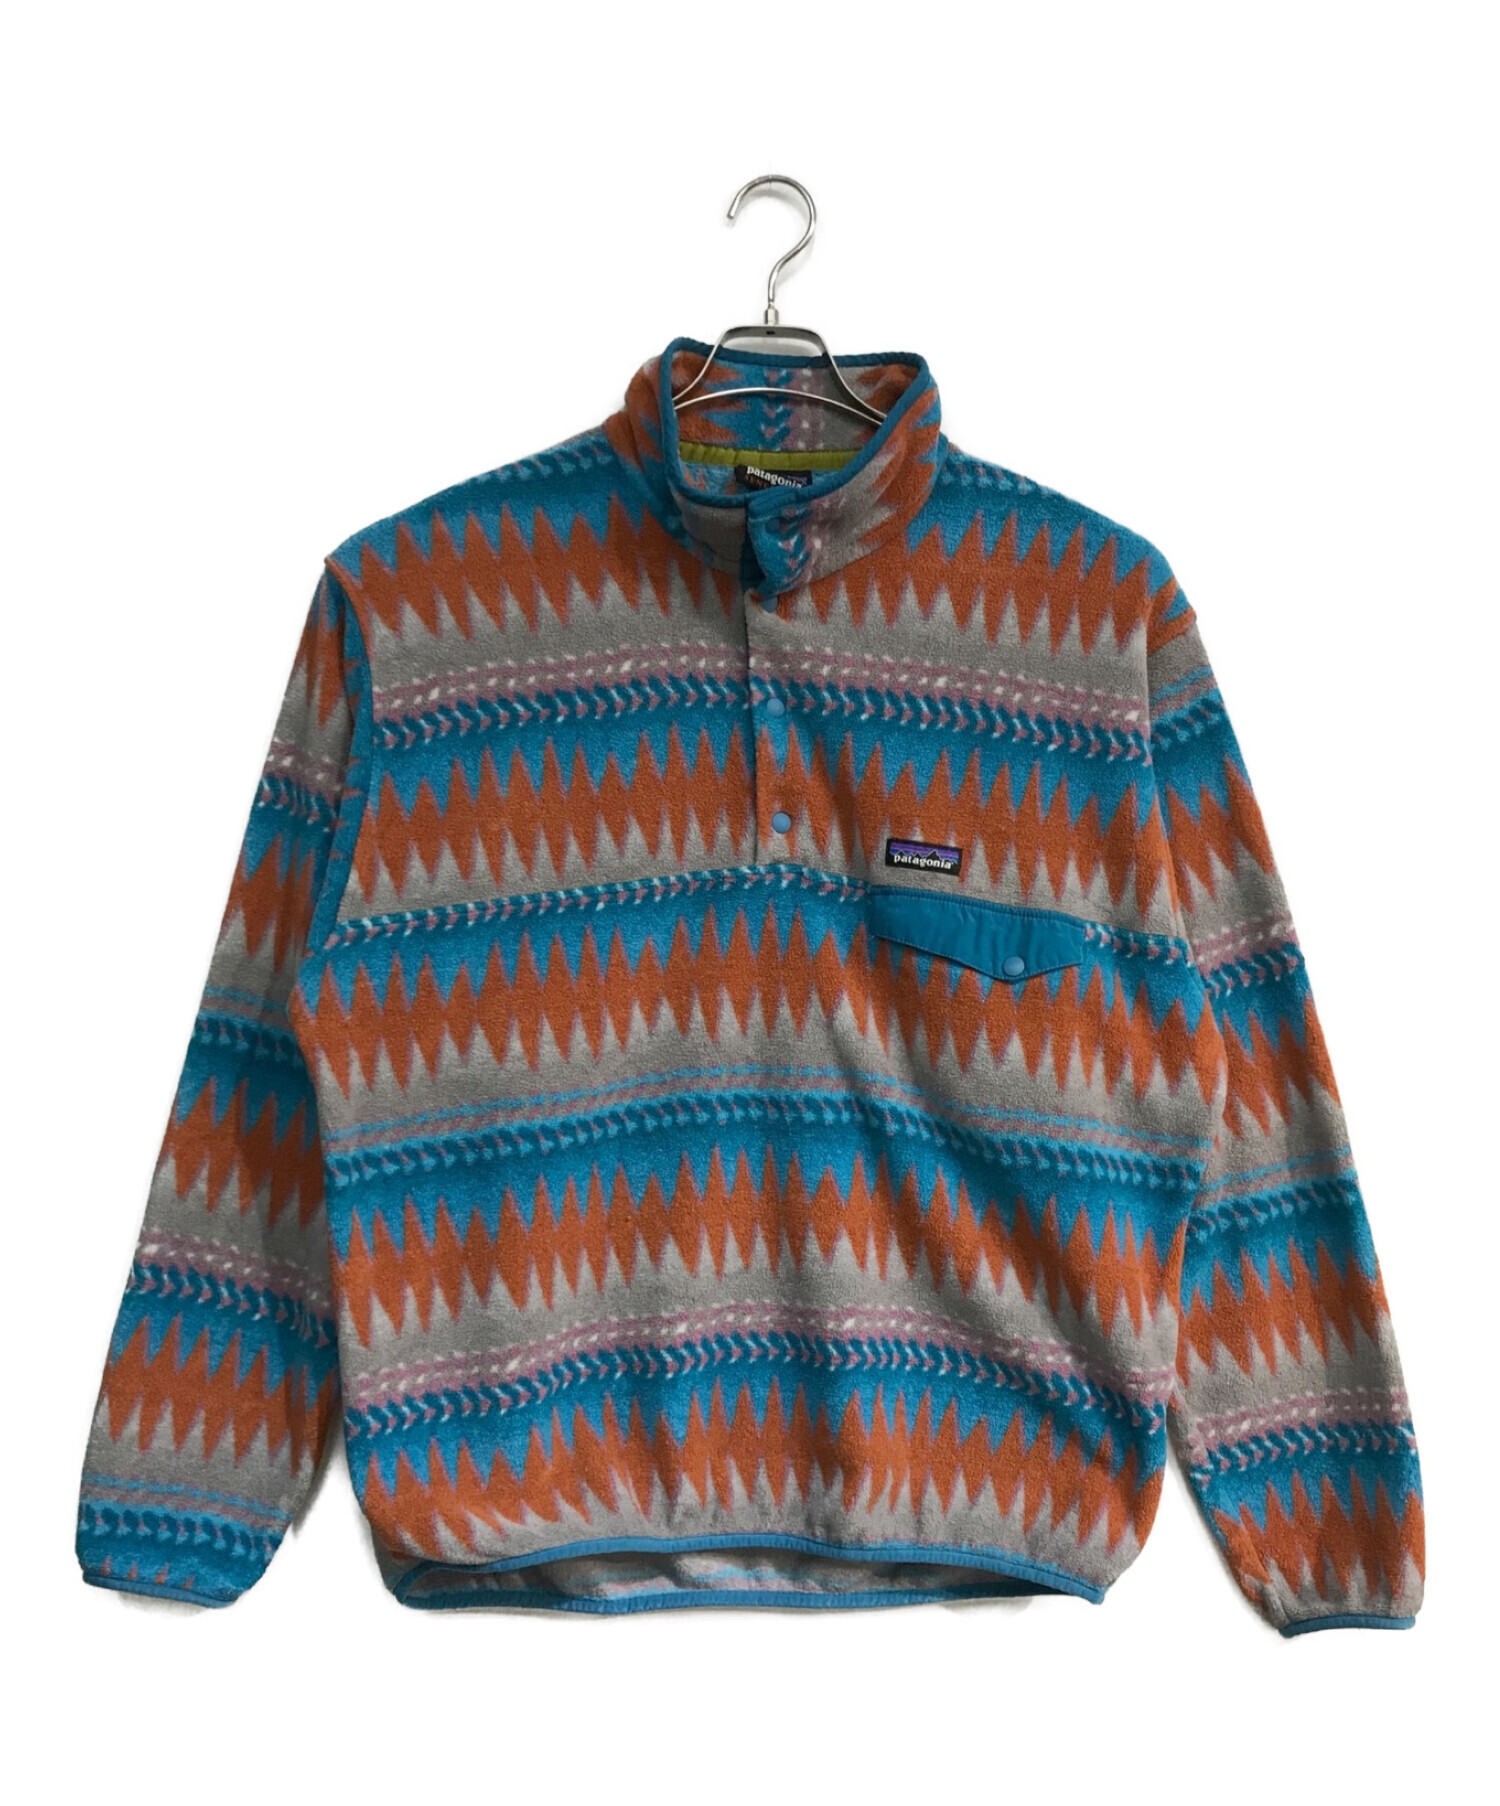 Patagonia (パタゴニア) シンチラスナップTジャケット　25580FA17 ブラウン×ブルー サイズ:L